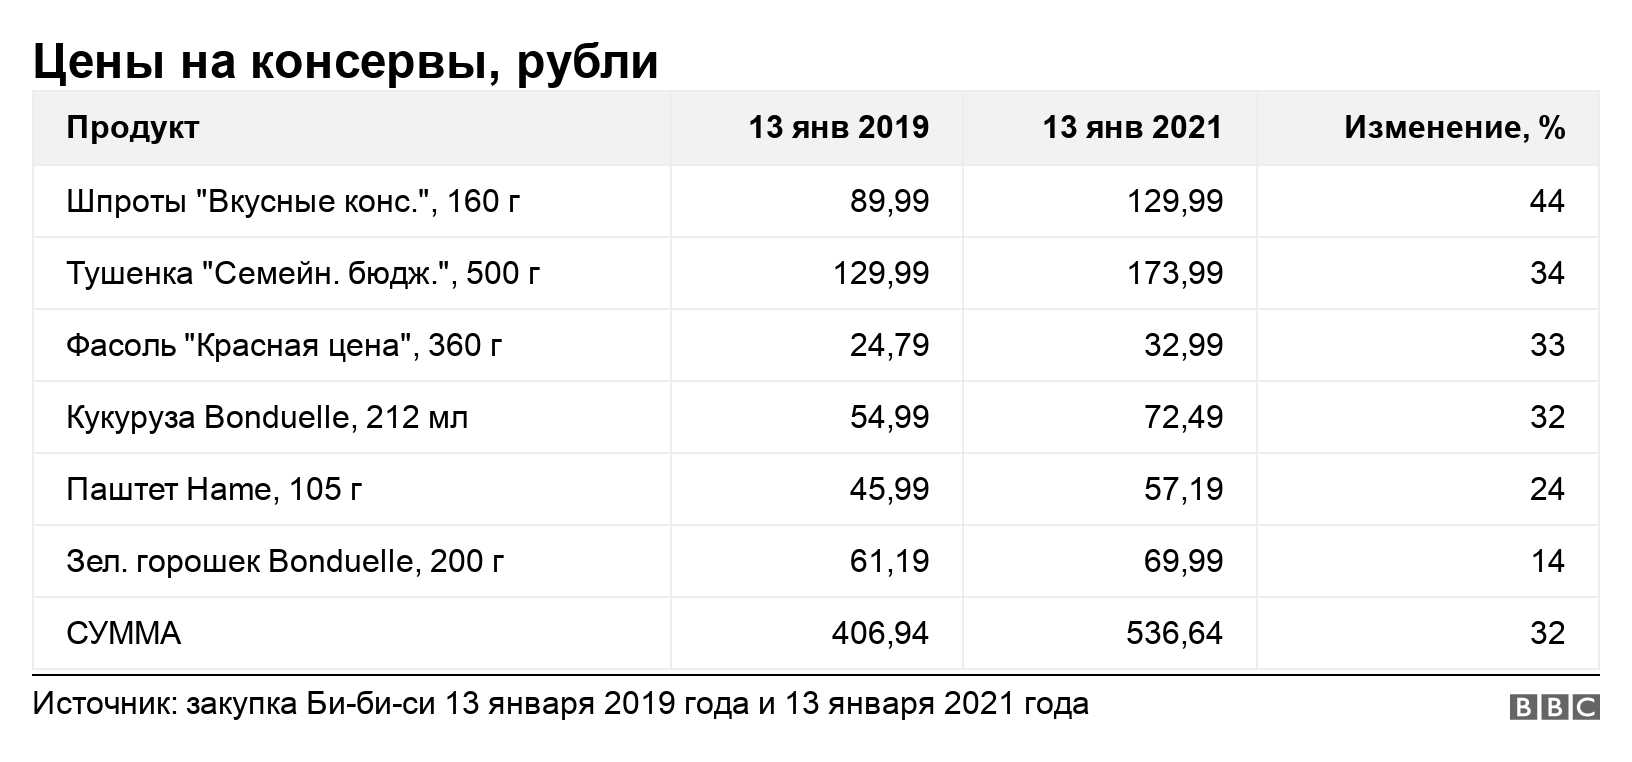 Цены на консервы, рубли. . .